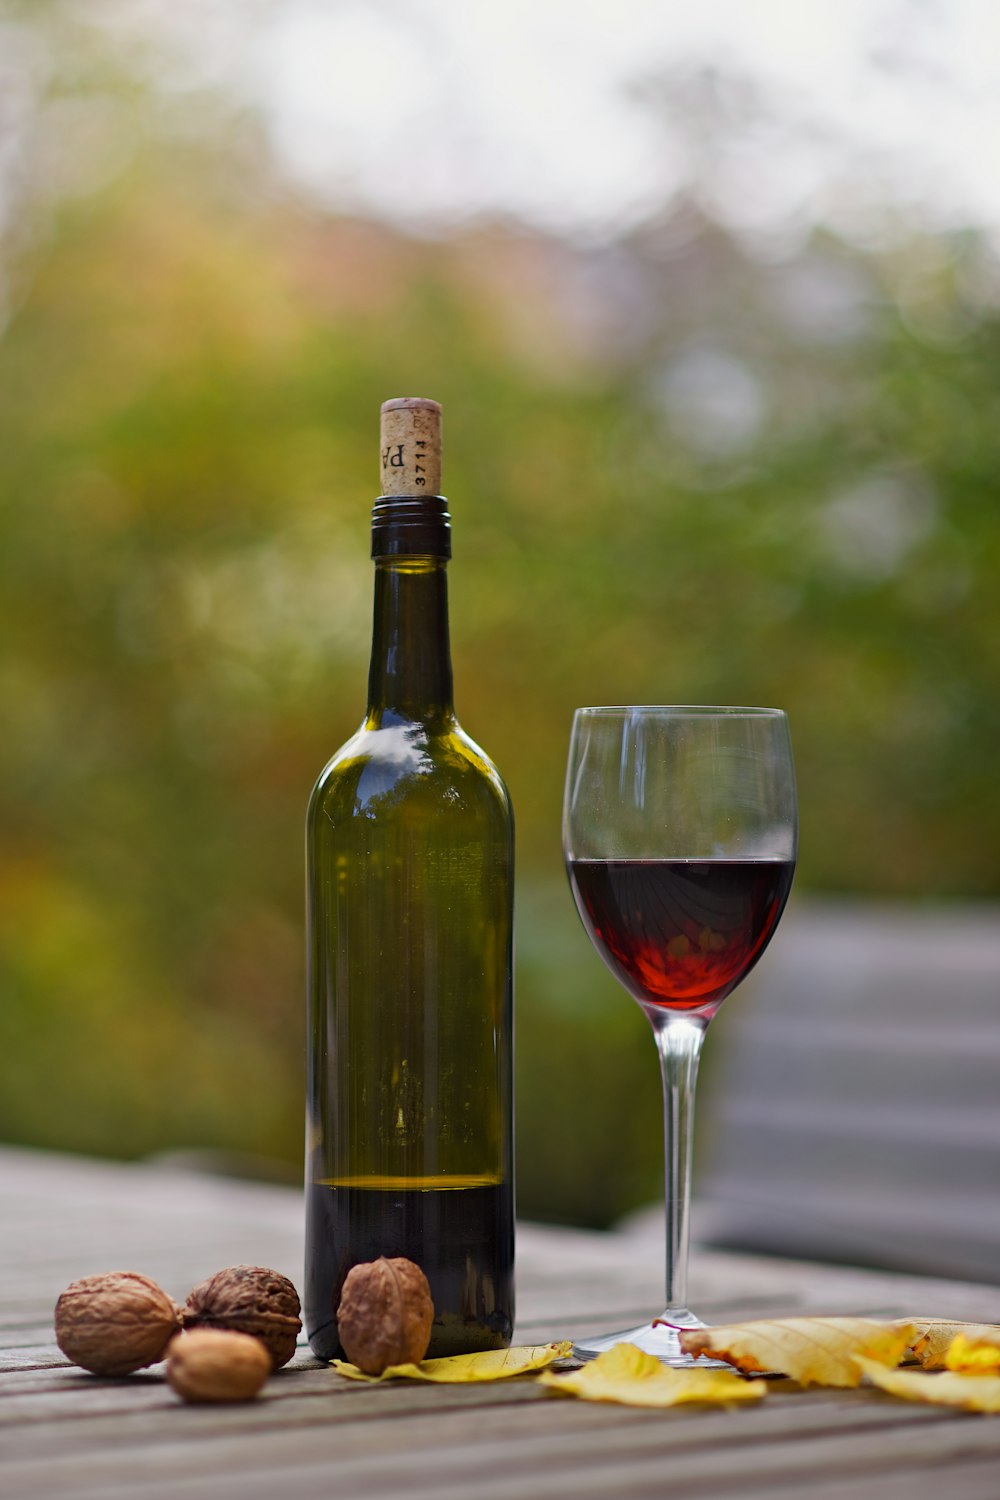 garrafa de vinho ao lado do copo de vinho na superfície de madeira marrom